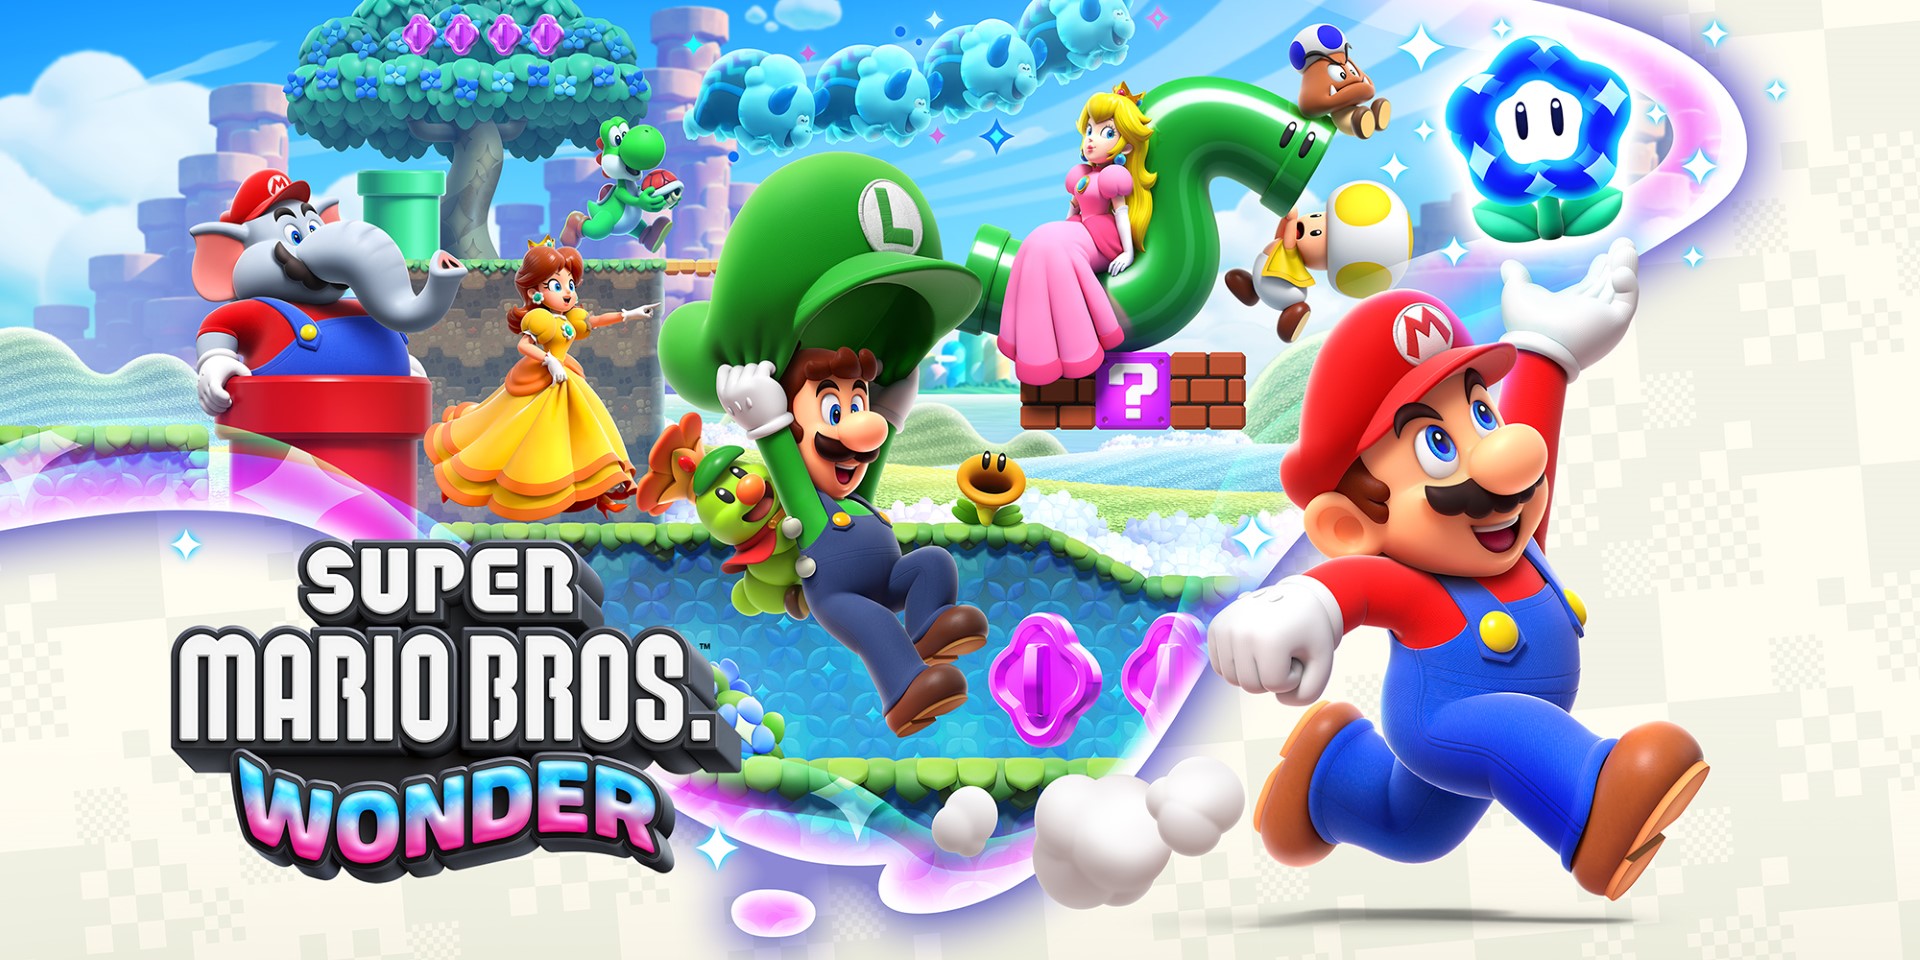 Fecha de lanzamiento de Super Mario Bros Wonder